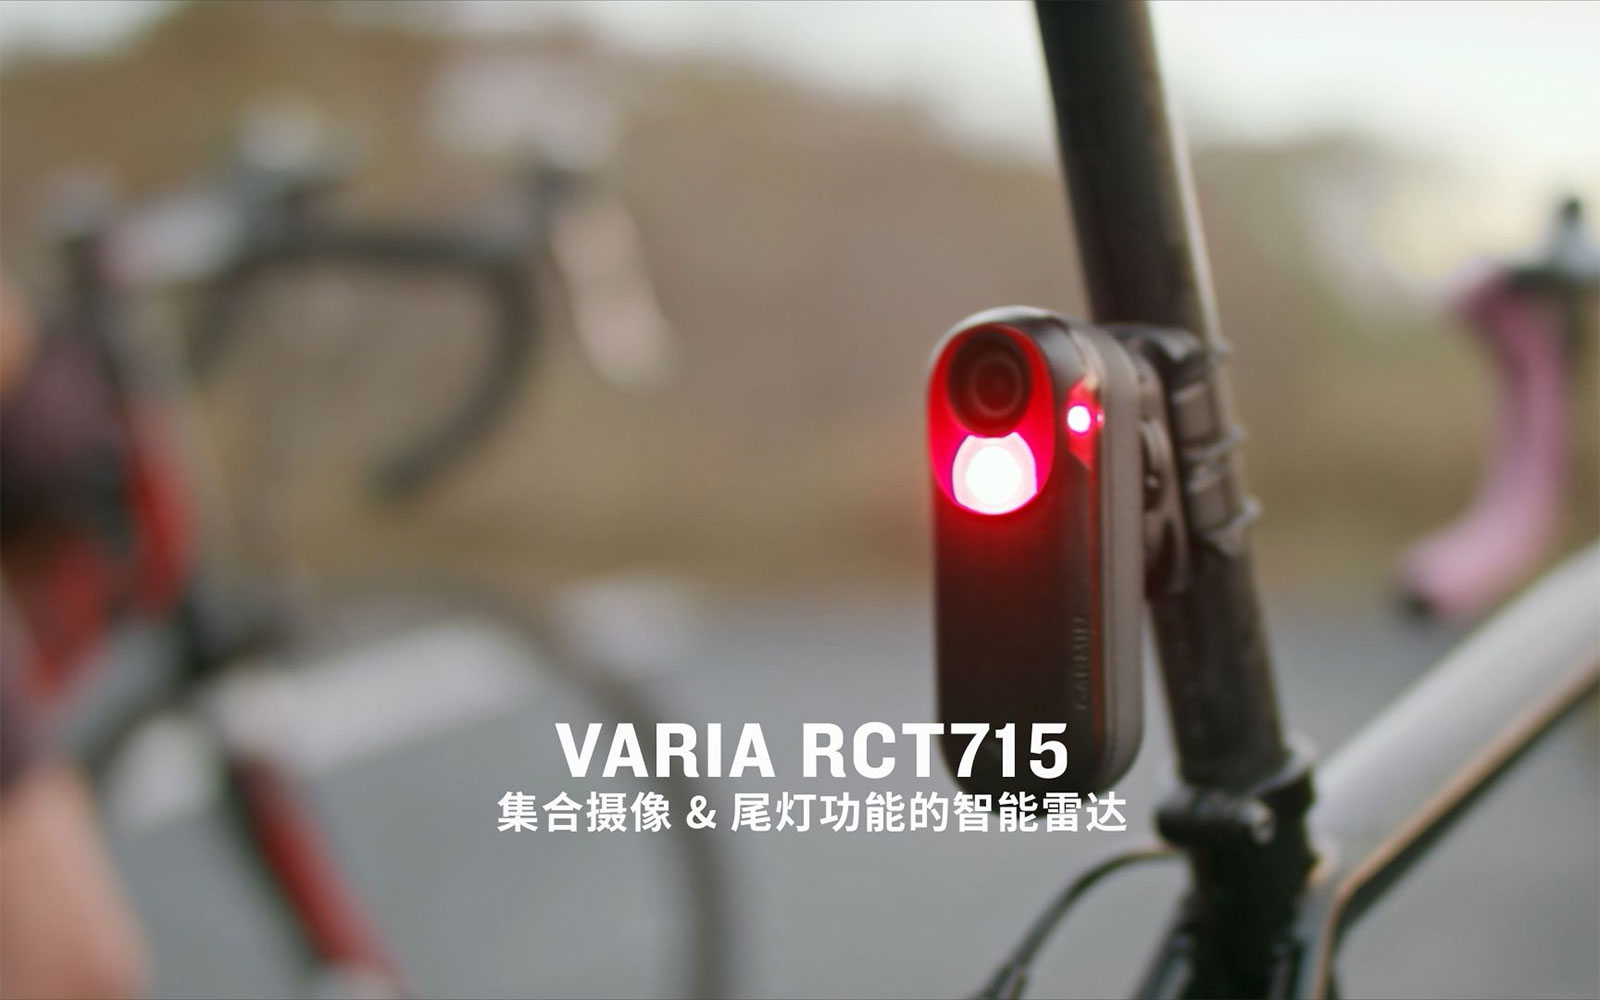 Varia RCT715 - 集成摄像及尾灯功能的智能雷达